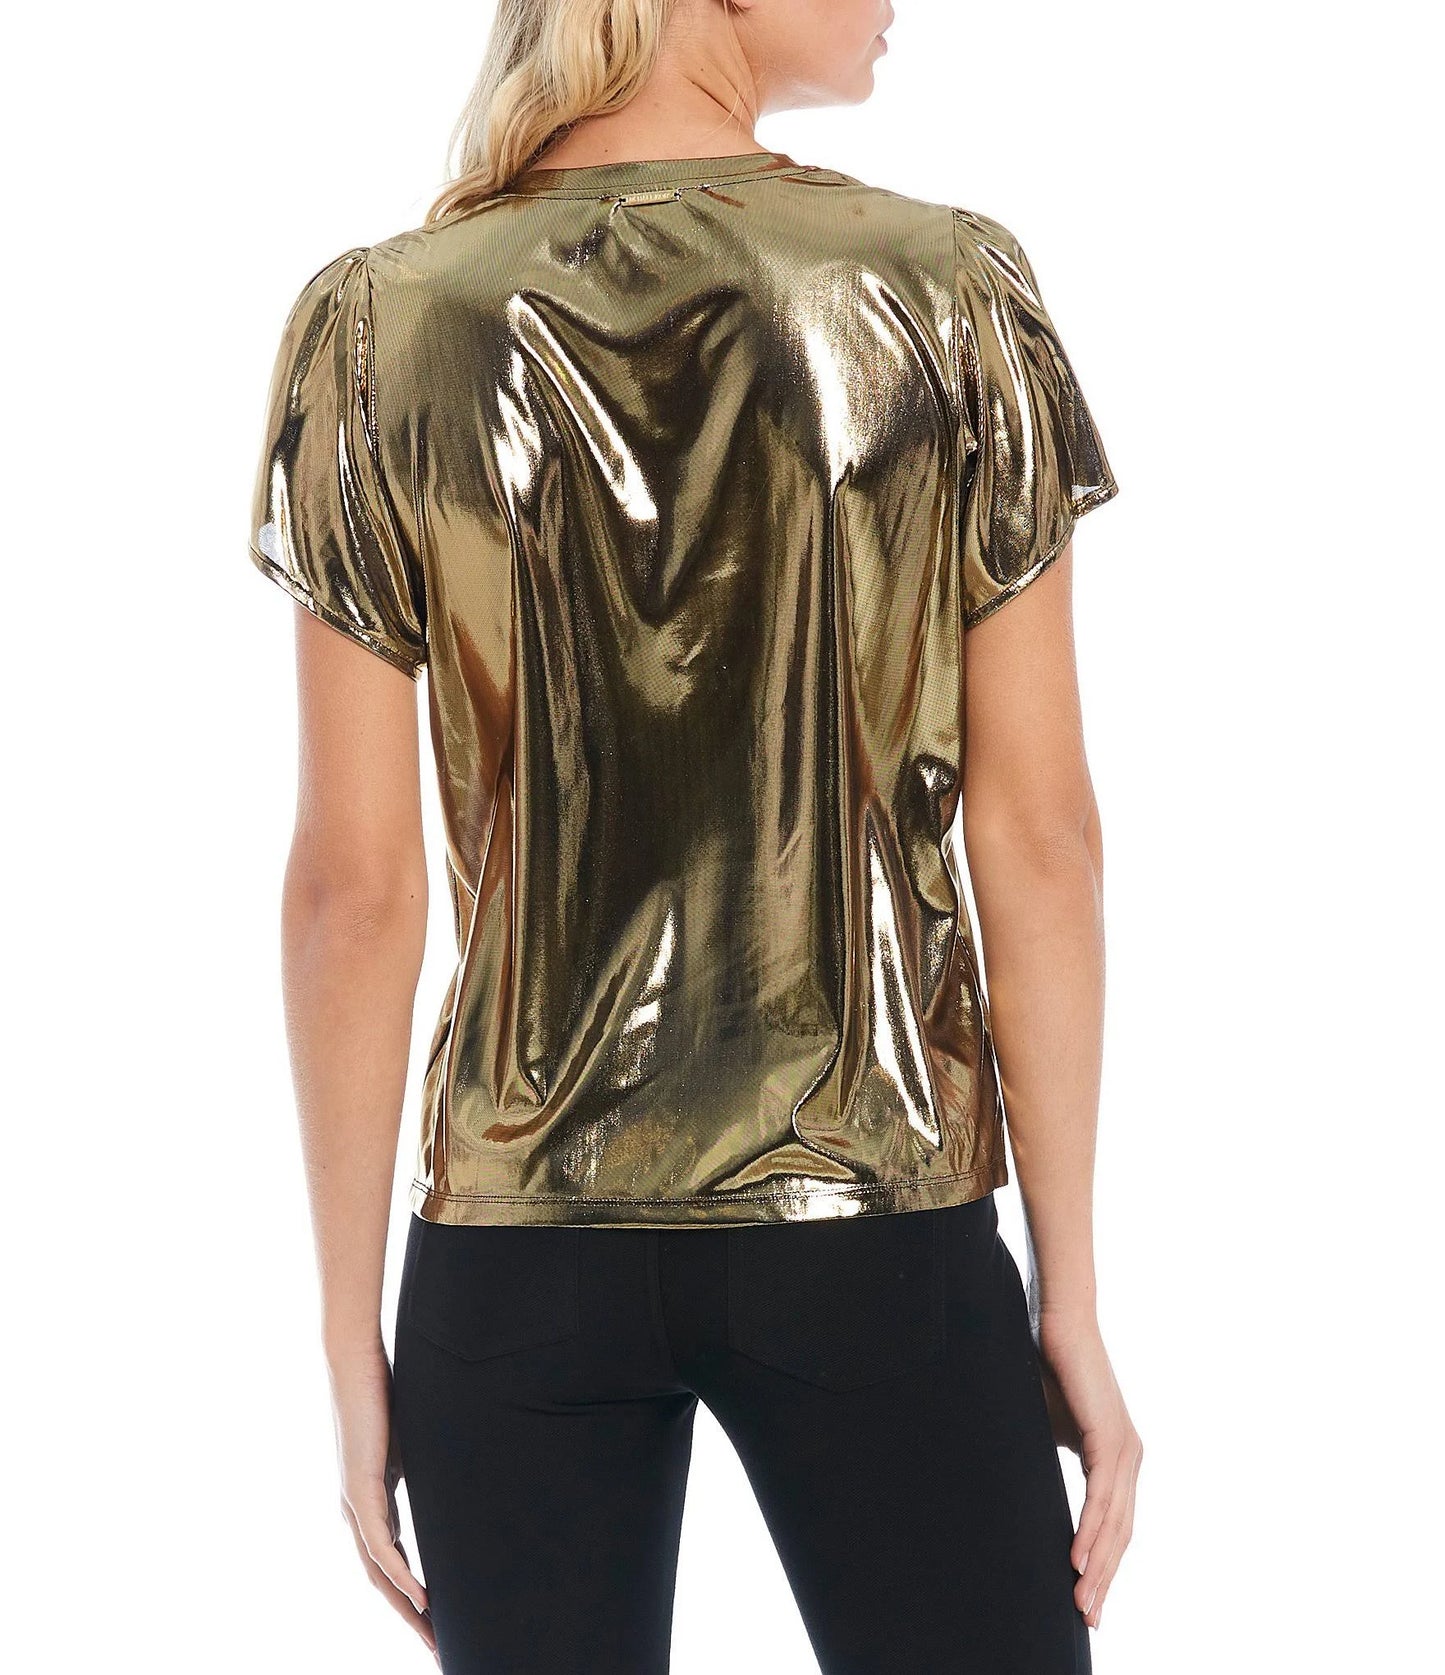 Michael Kors Women's Petites Foil Jersey Petal Sleeve Top  Color Gold Size PM